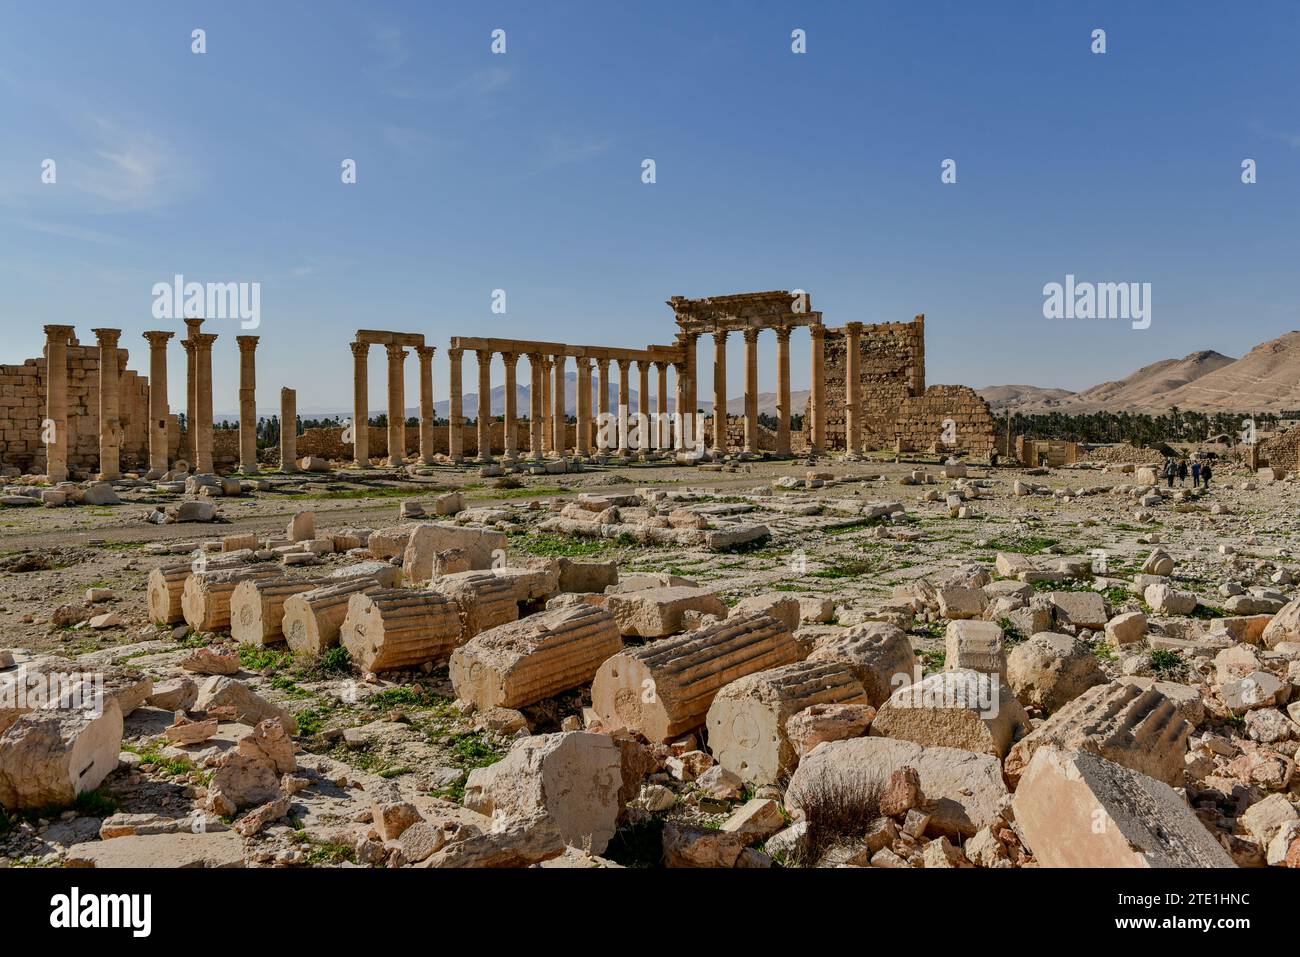 Rovine del Tempio di bel nell'antica città di Palmira, Siria. Bombardato dalle forze dello Stato islamico nell'agosto 2015 Foto Stock